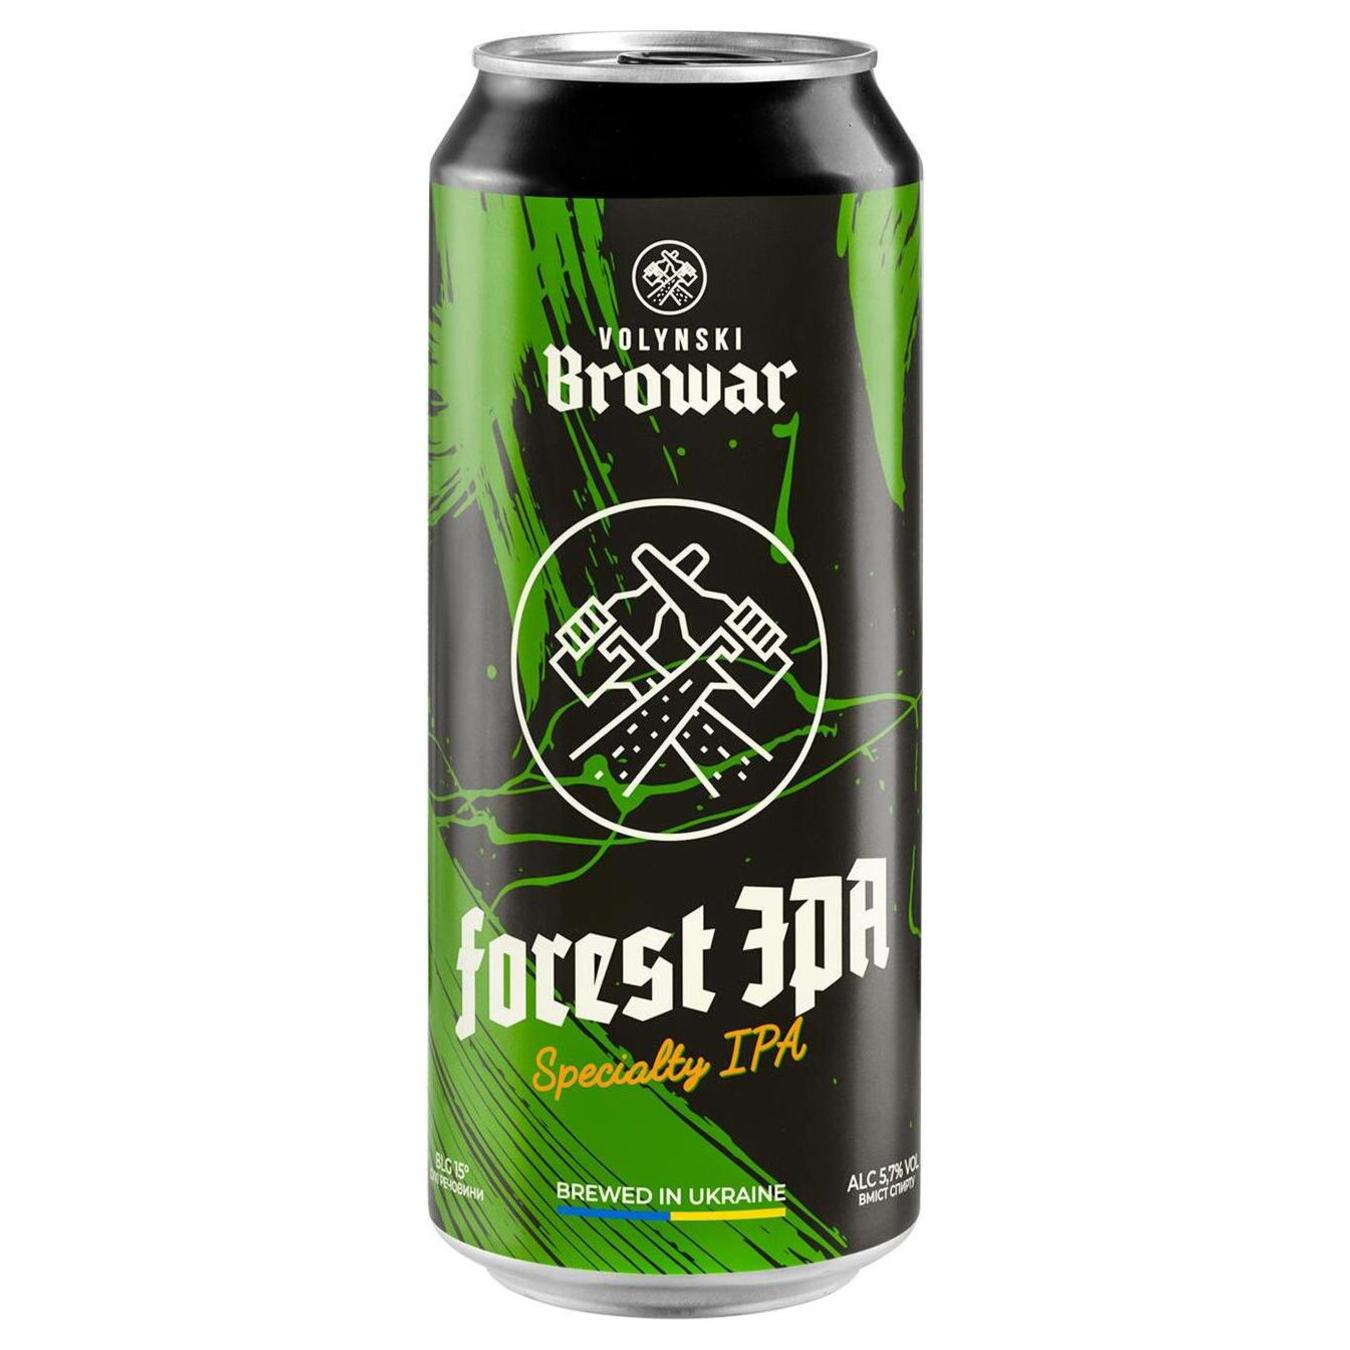 Beer Volynsky Brovar Forest Ipa light unfiltered 5.7% 0.5l